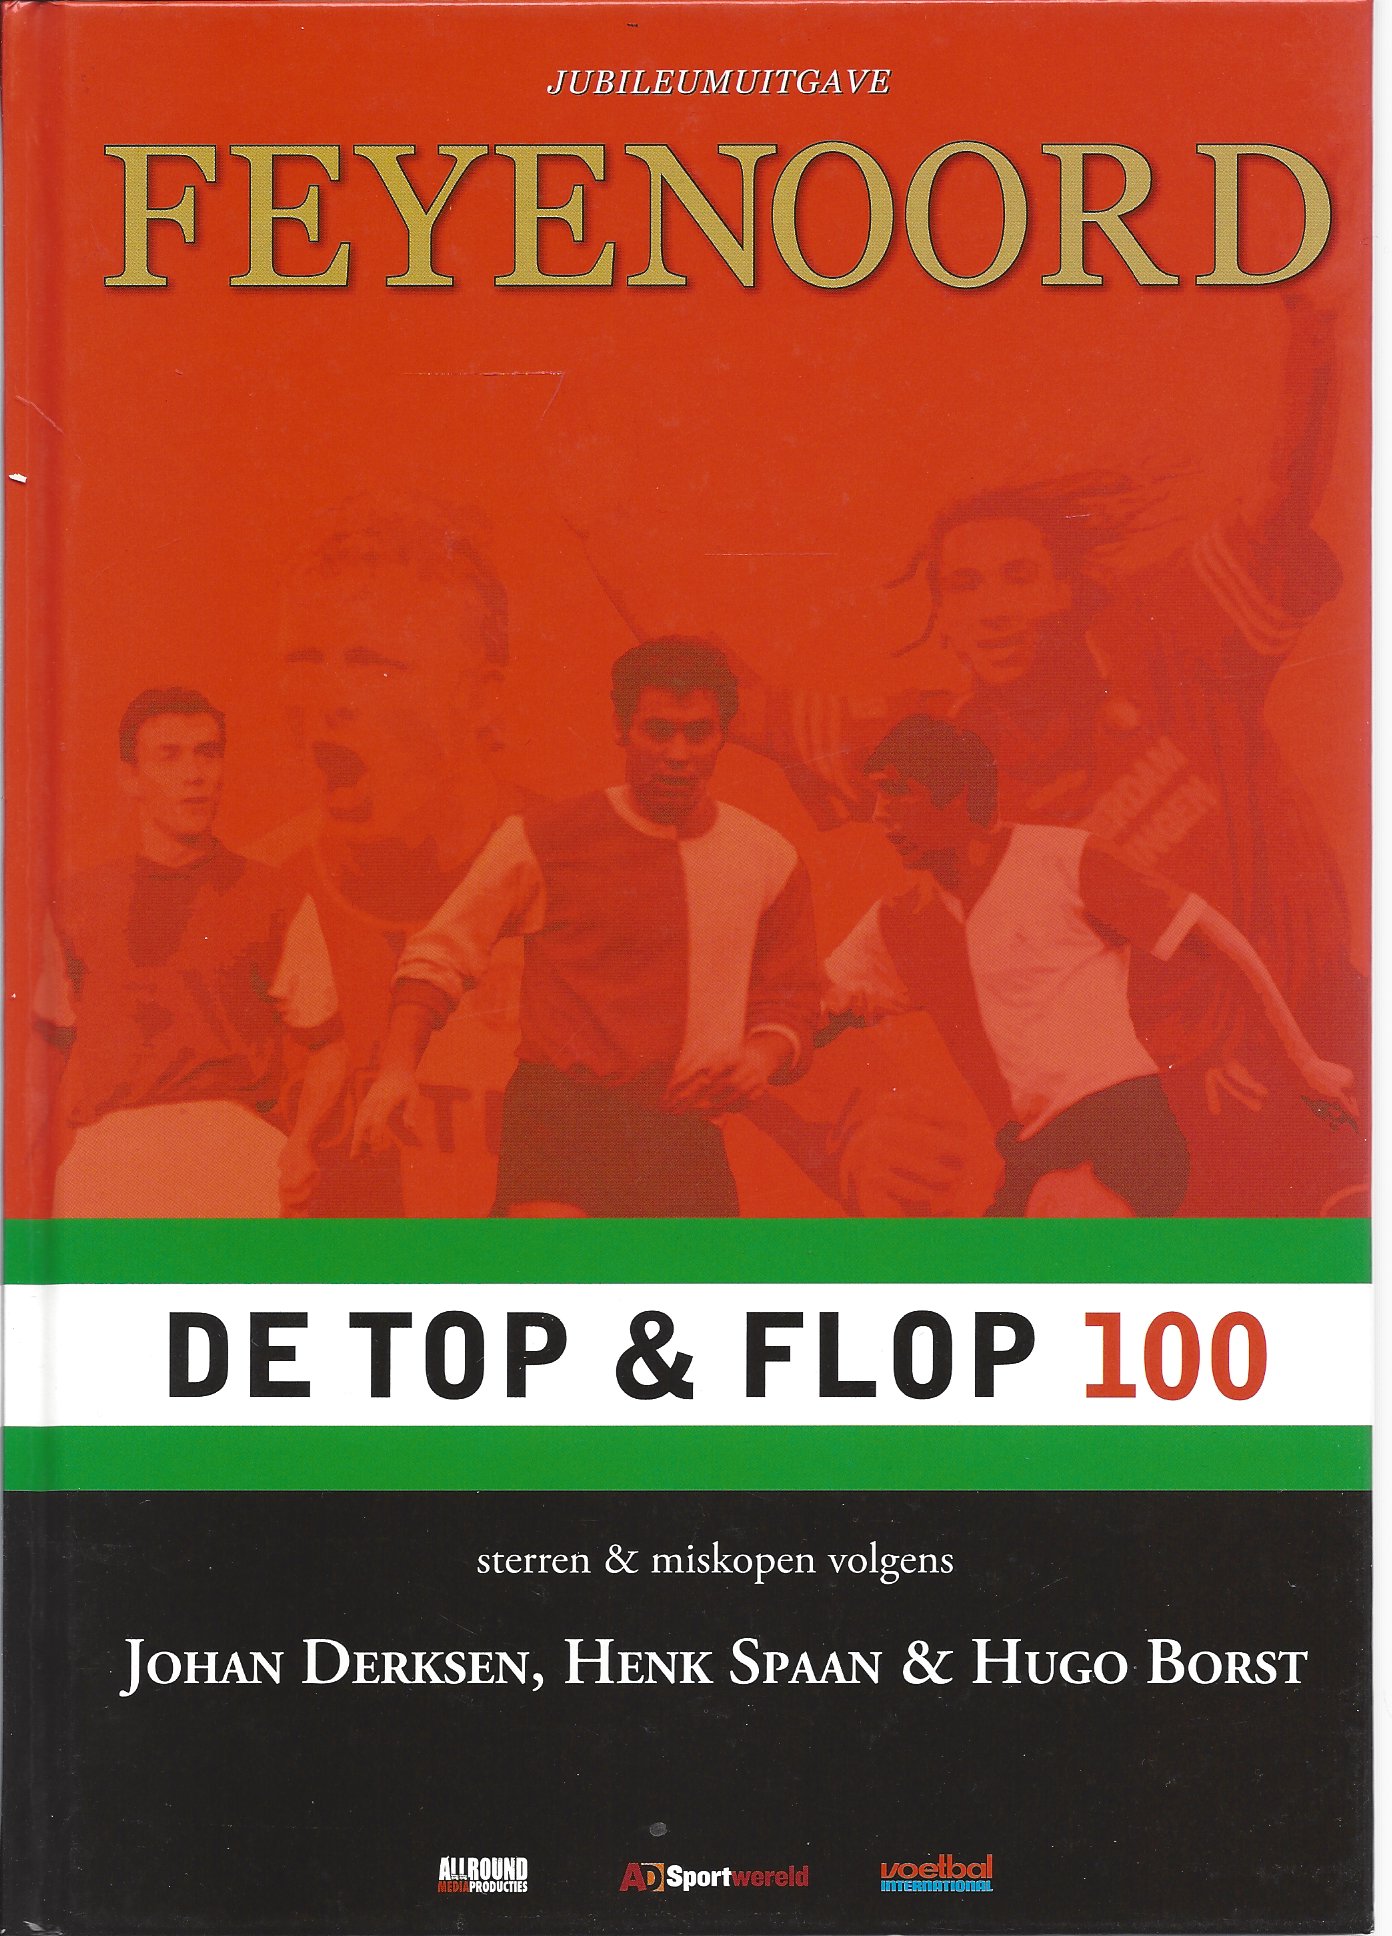 Verheul, Leo - Jubileumuitgave Feyenoord. De Top & Flop 100 -Sterren & miskopen volgens Johan Derksen, Henk Spaan & Hugo Borst